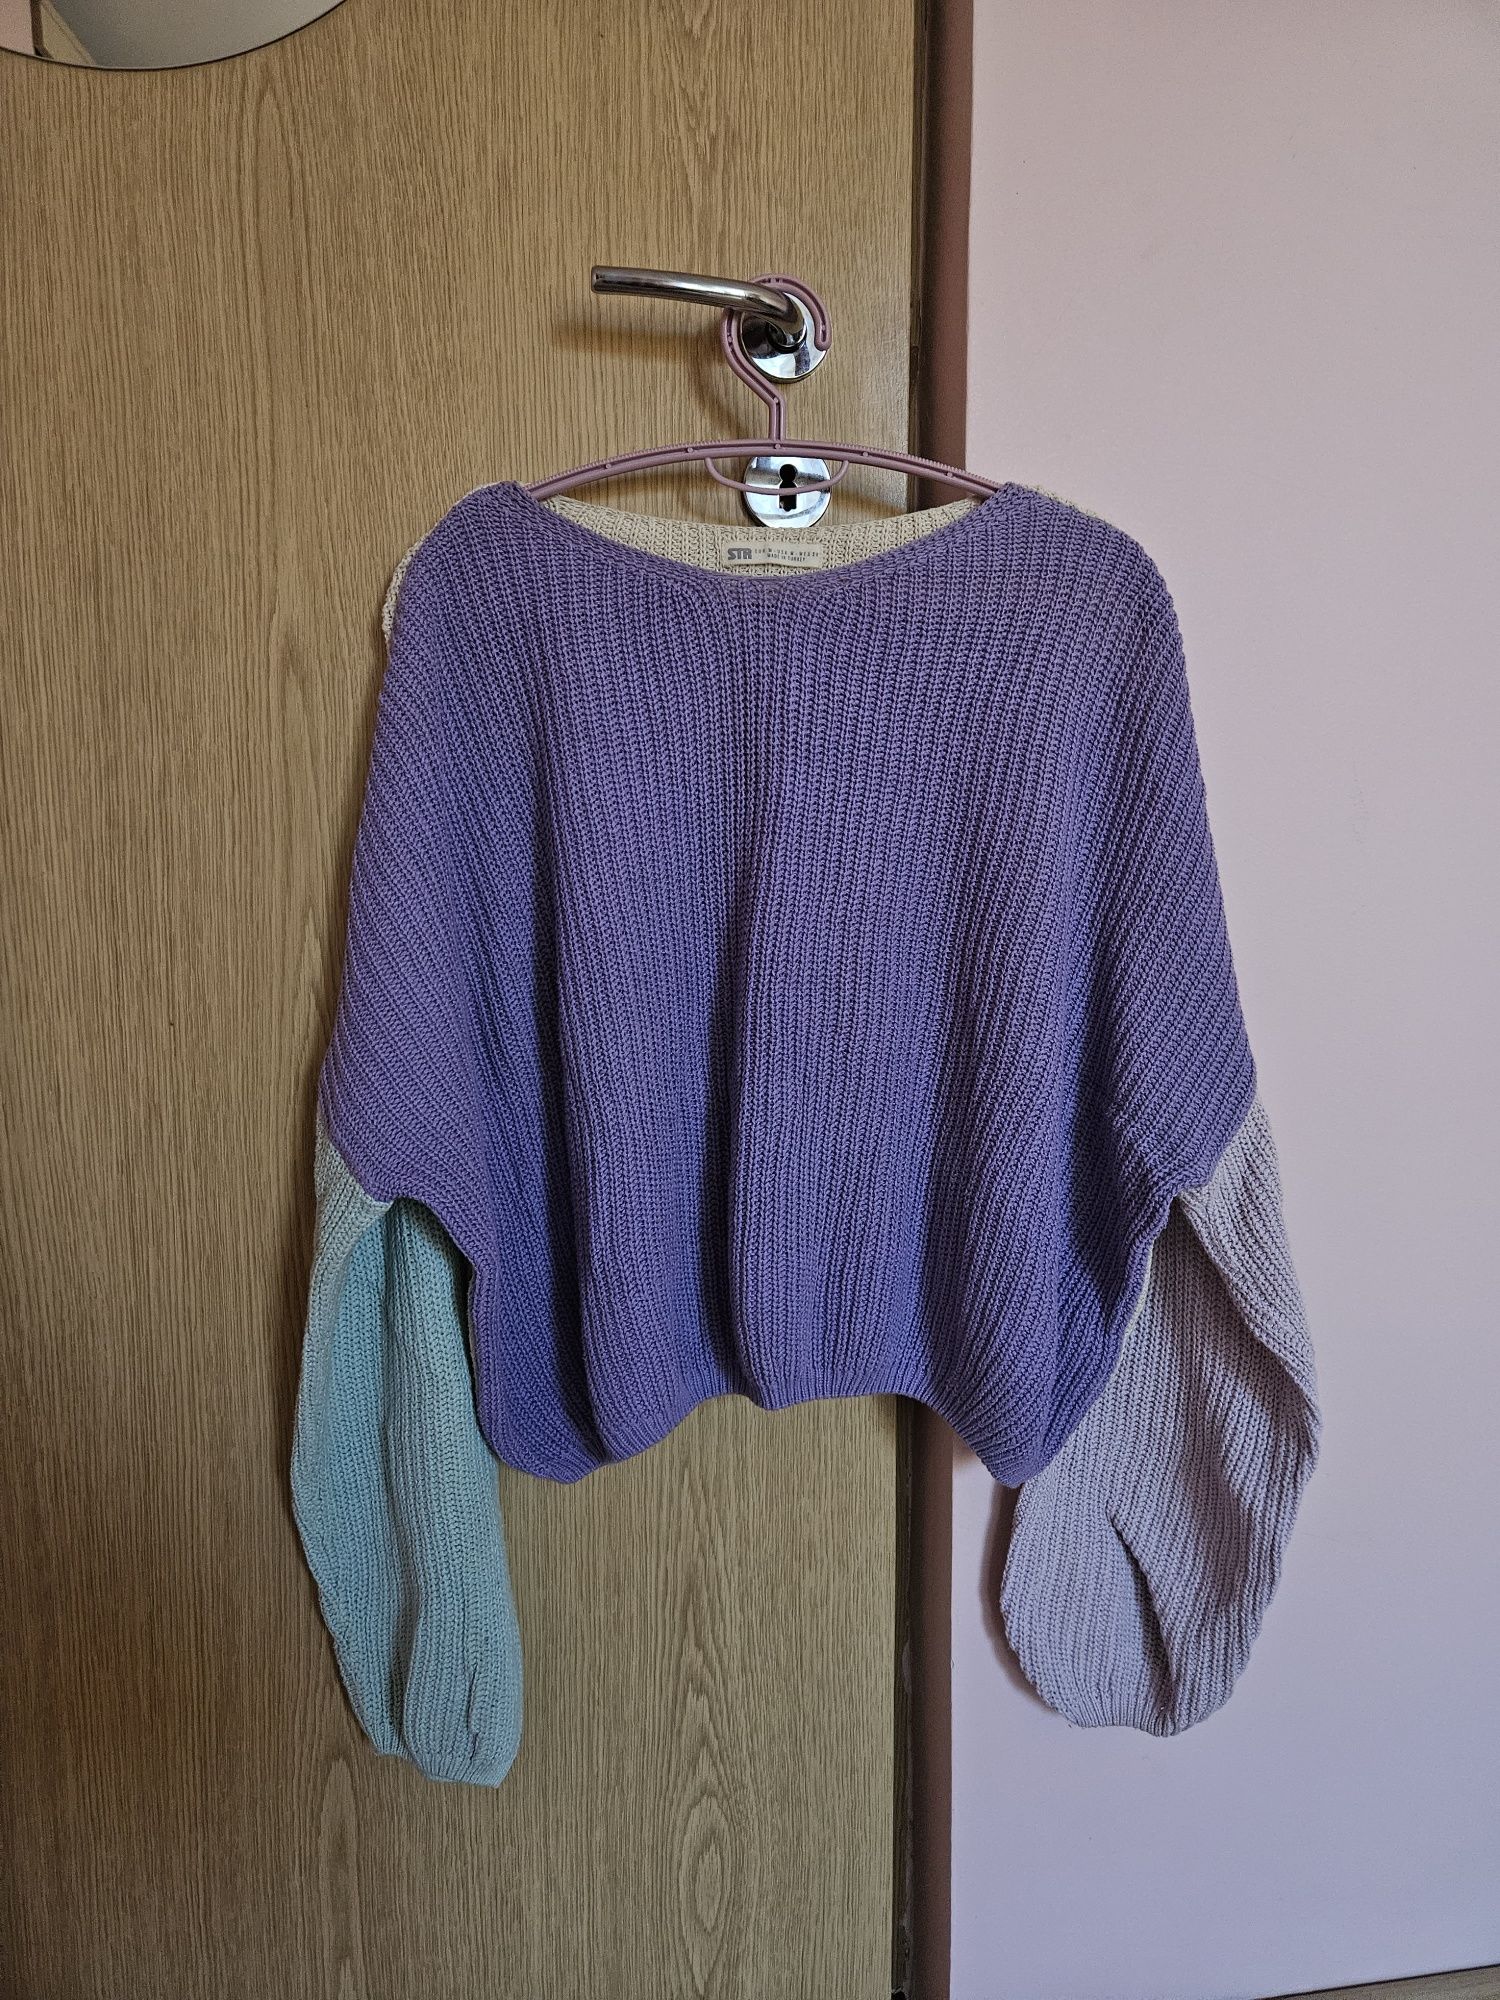 Pulover tricotat în 4 culori